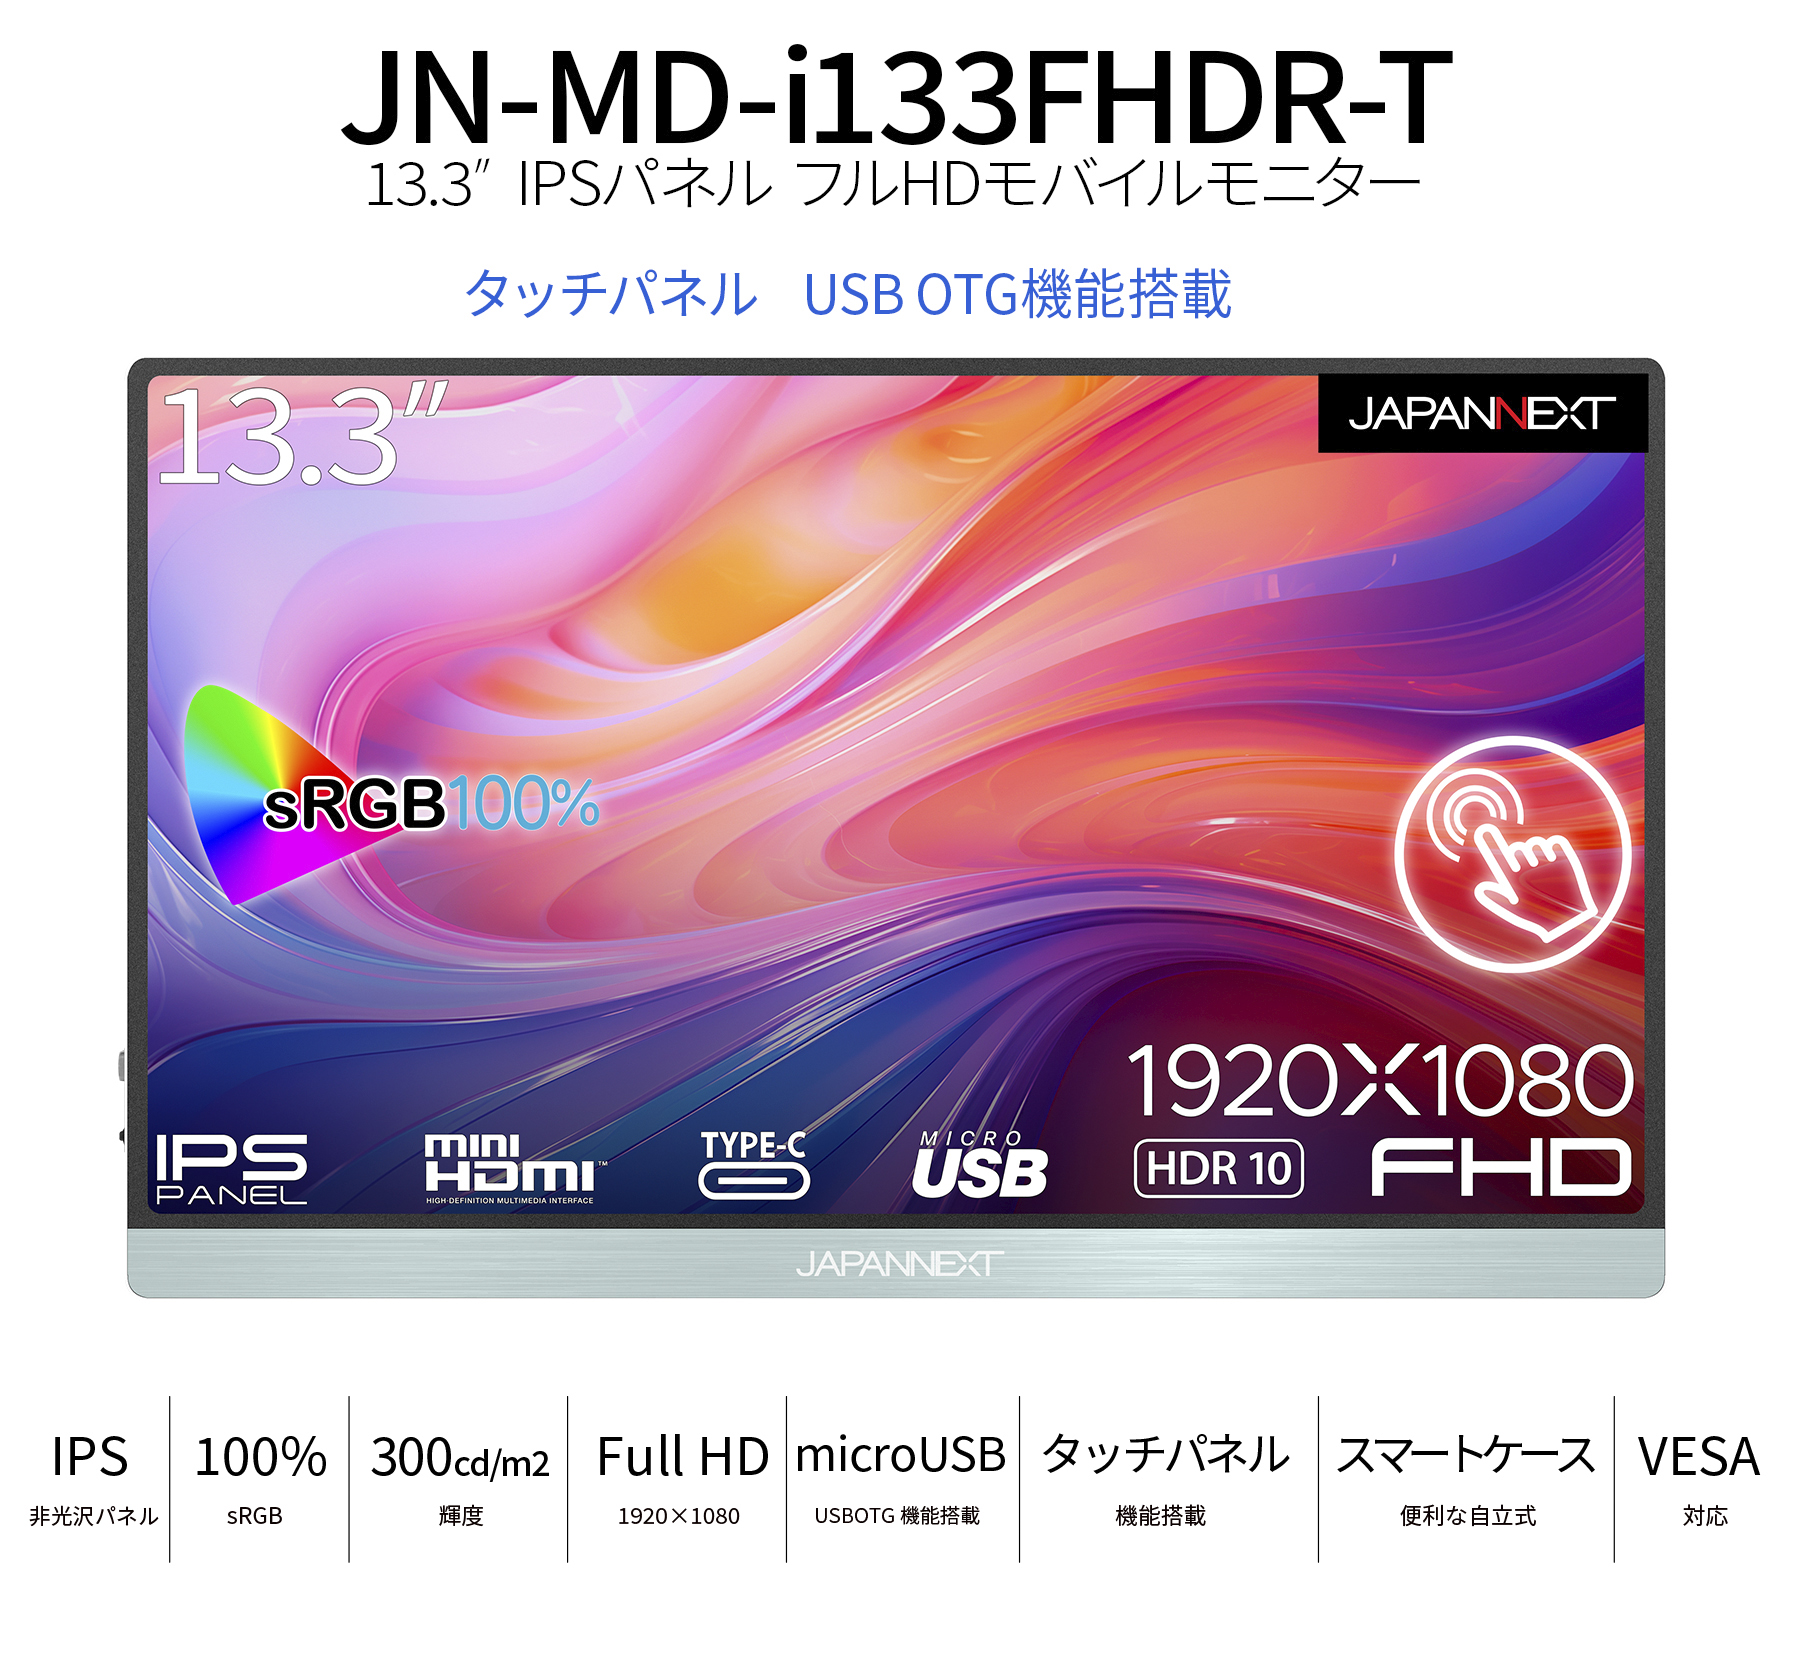 JAPANNEXT 13.3インチ タッチパネル搭載 フルHD(1920x1080) モバイルモニター JN-MD-i133FHDR-T USB  Type-C miniHDMI sRGB100% USB OTG対応 スマートケース付き